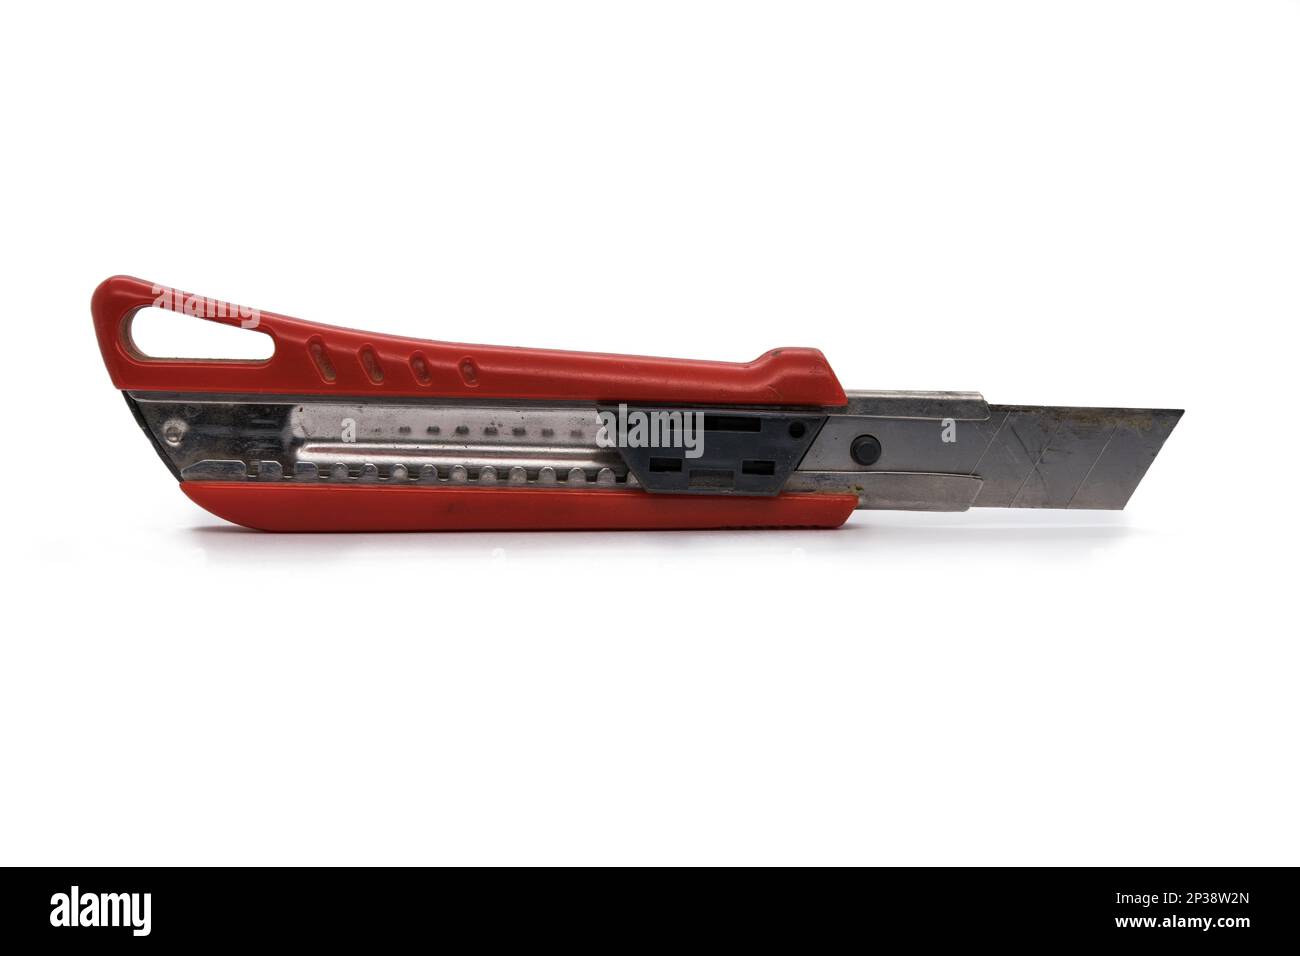 Utilisé couteau utilitaire à lame rétractable rouge avec lame sortie isolée sur fond blanc Banque D'Images